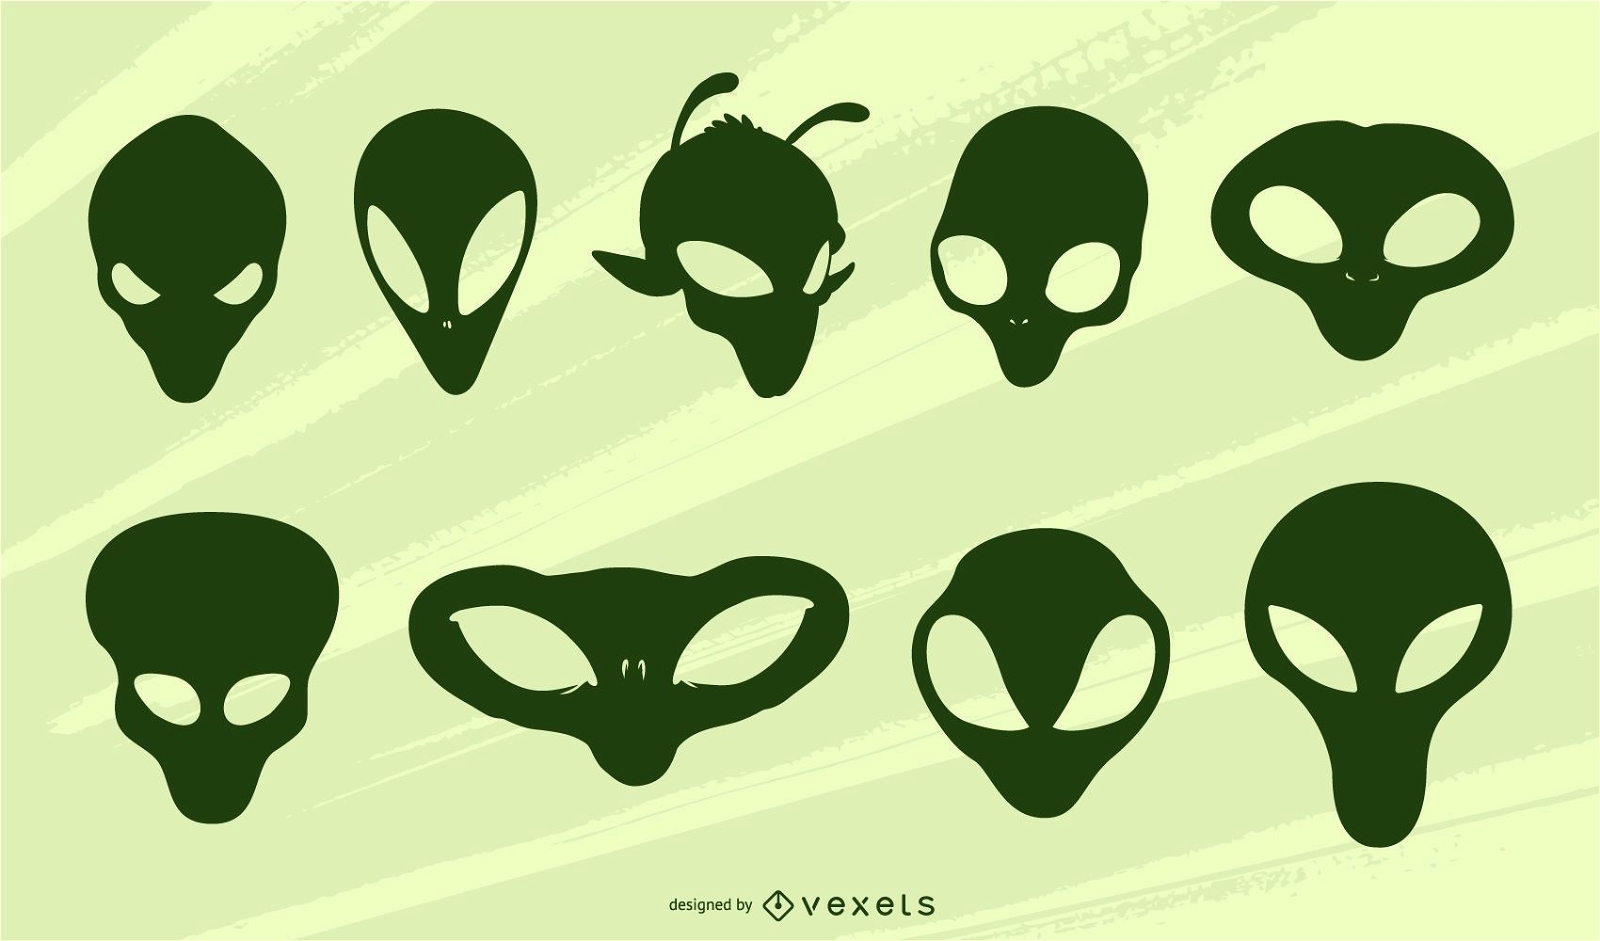 alien head logo